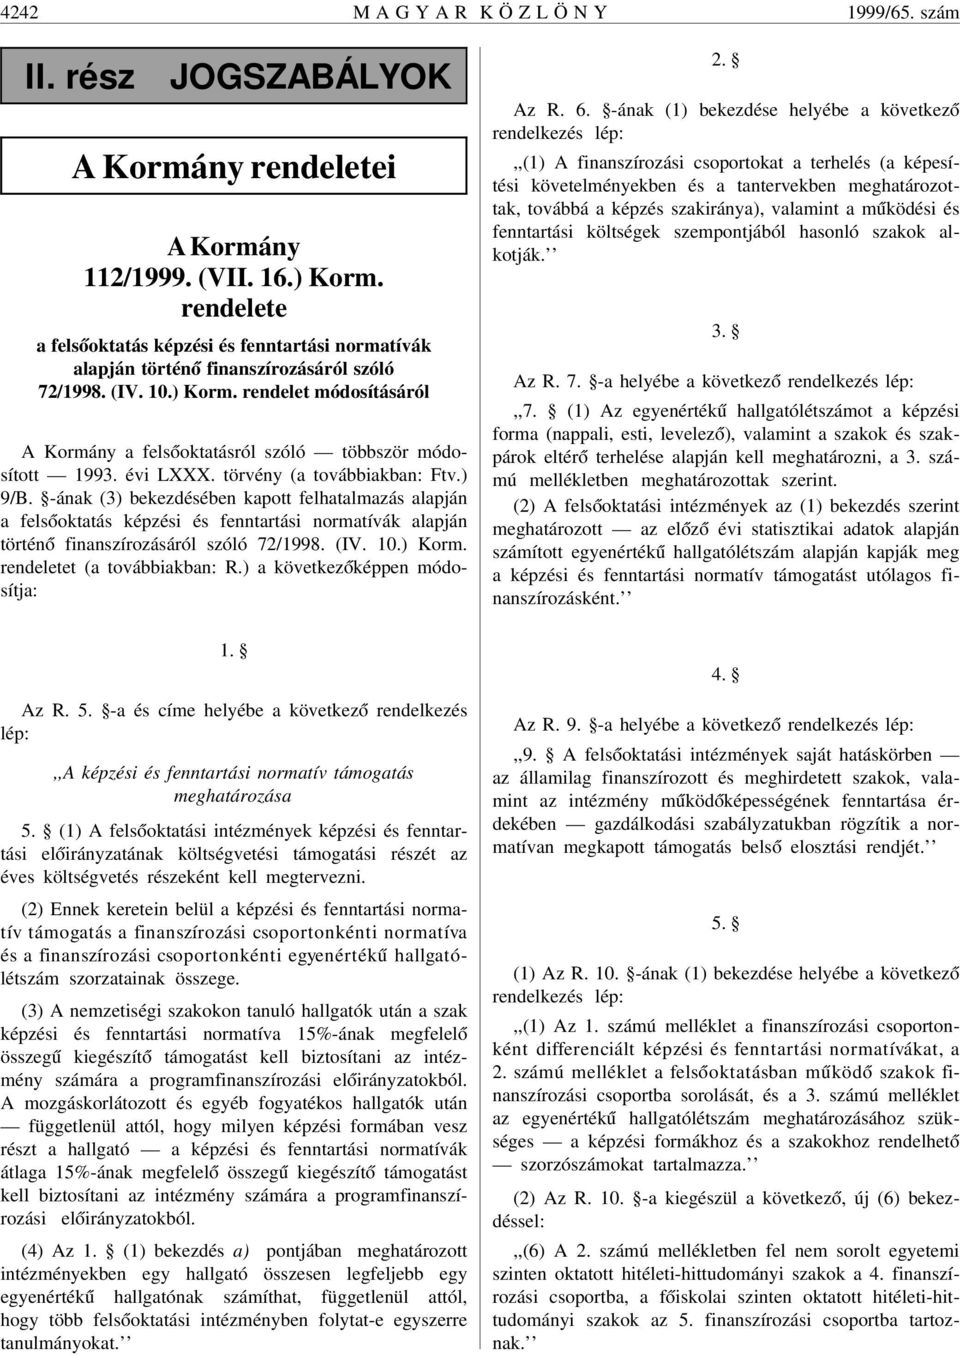 rendelet módosításáról A Kormány a fels óoktatásról szóló többször módosított 1993. évi LXXX. törvény (a továbbiakban: Ftv.) 9/B.